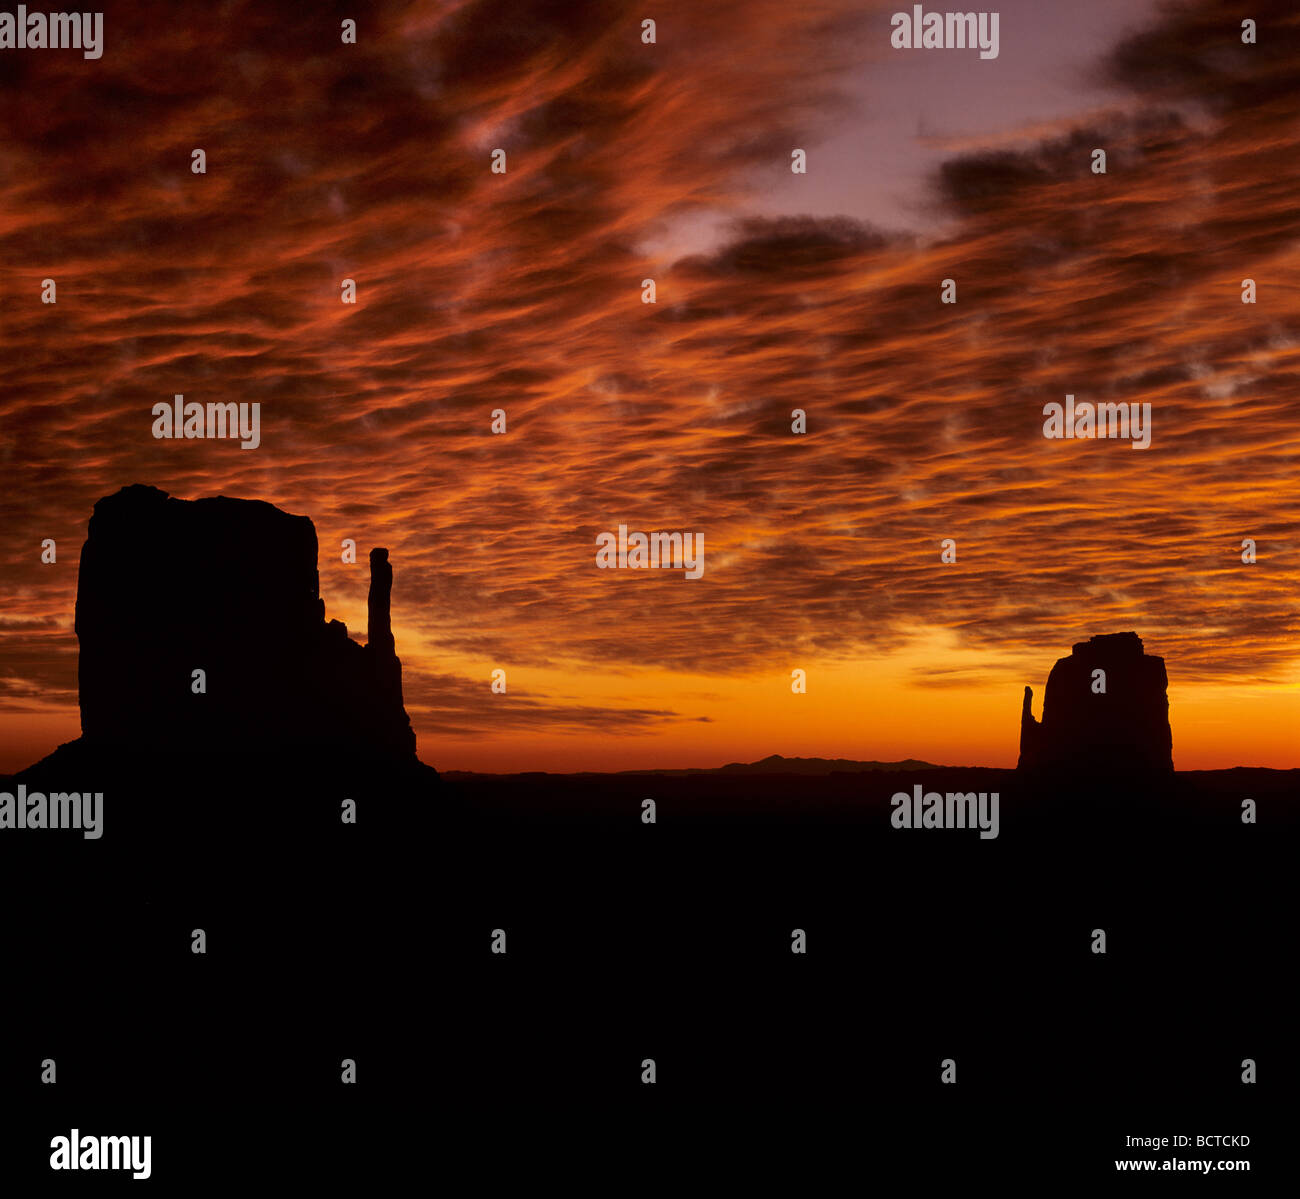 Le crépuscule des dieux, coucher de soleil, Monument Valley, Navajo Nation Réservation, Plateau du Colorado, Arizona, USA Banque D'Images